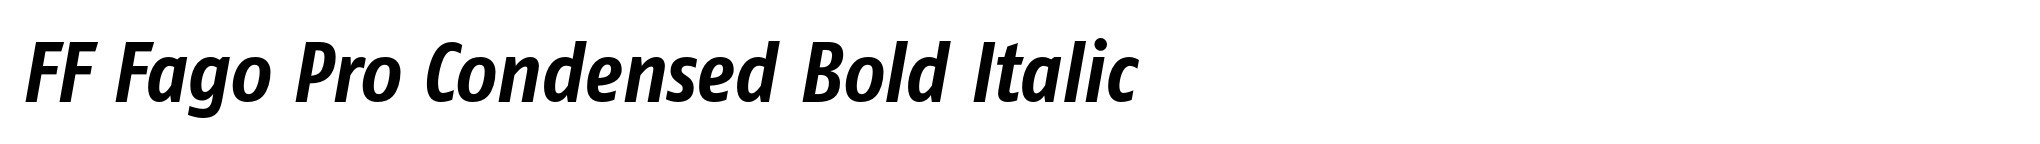 FF Fago Pro Condensed Bold Italic image